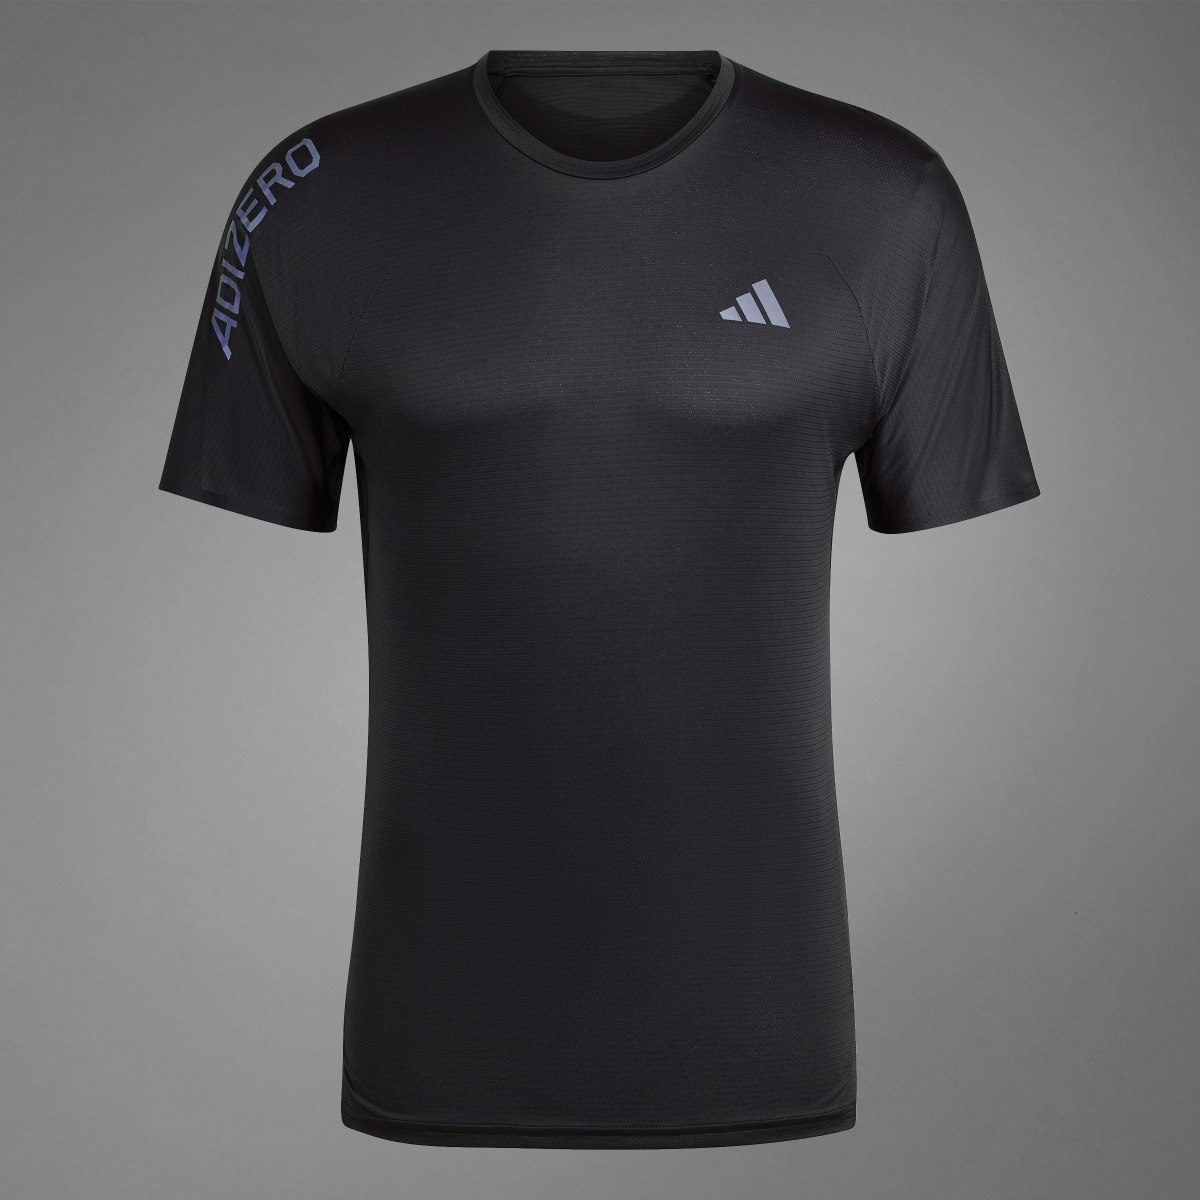 Adidas Camiseta Adizero Running. 11